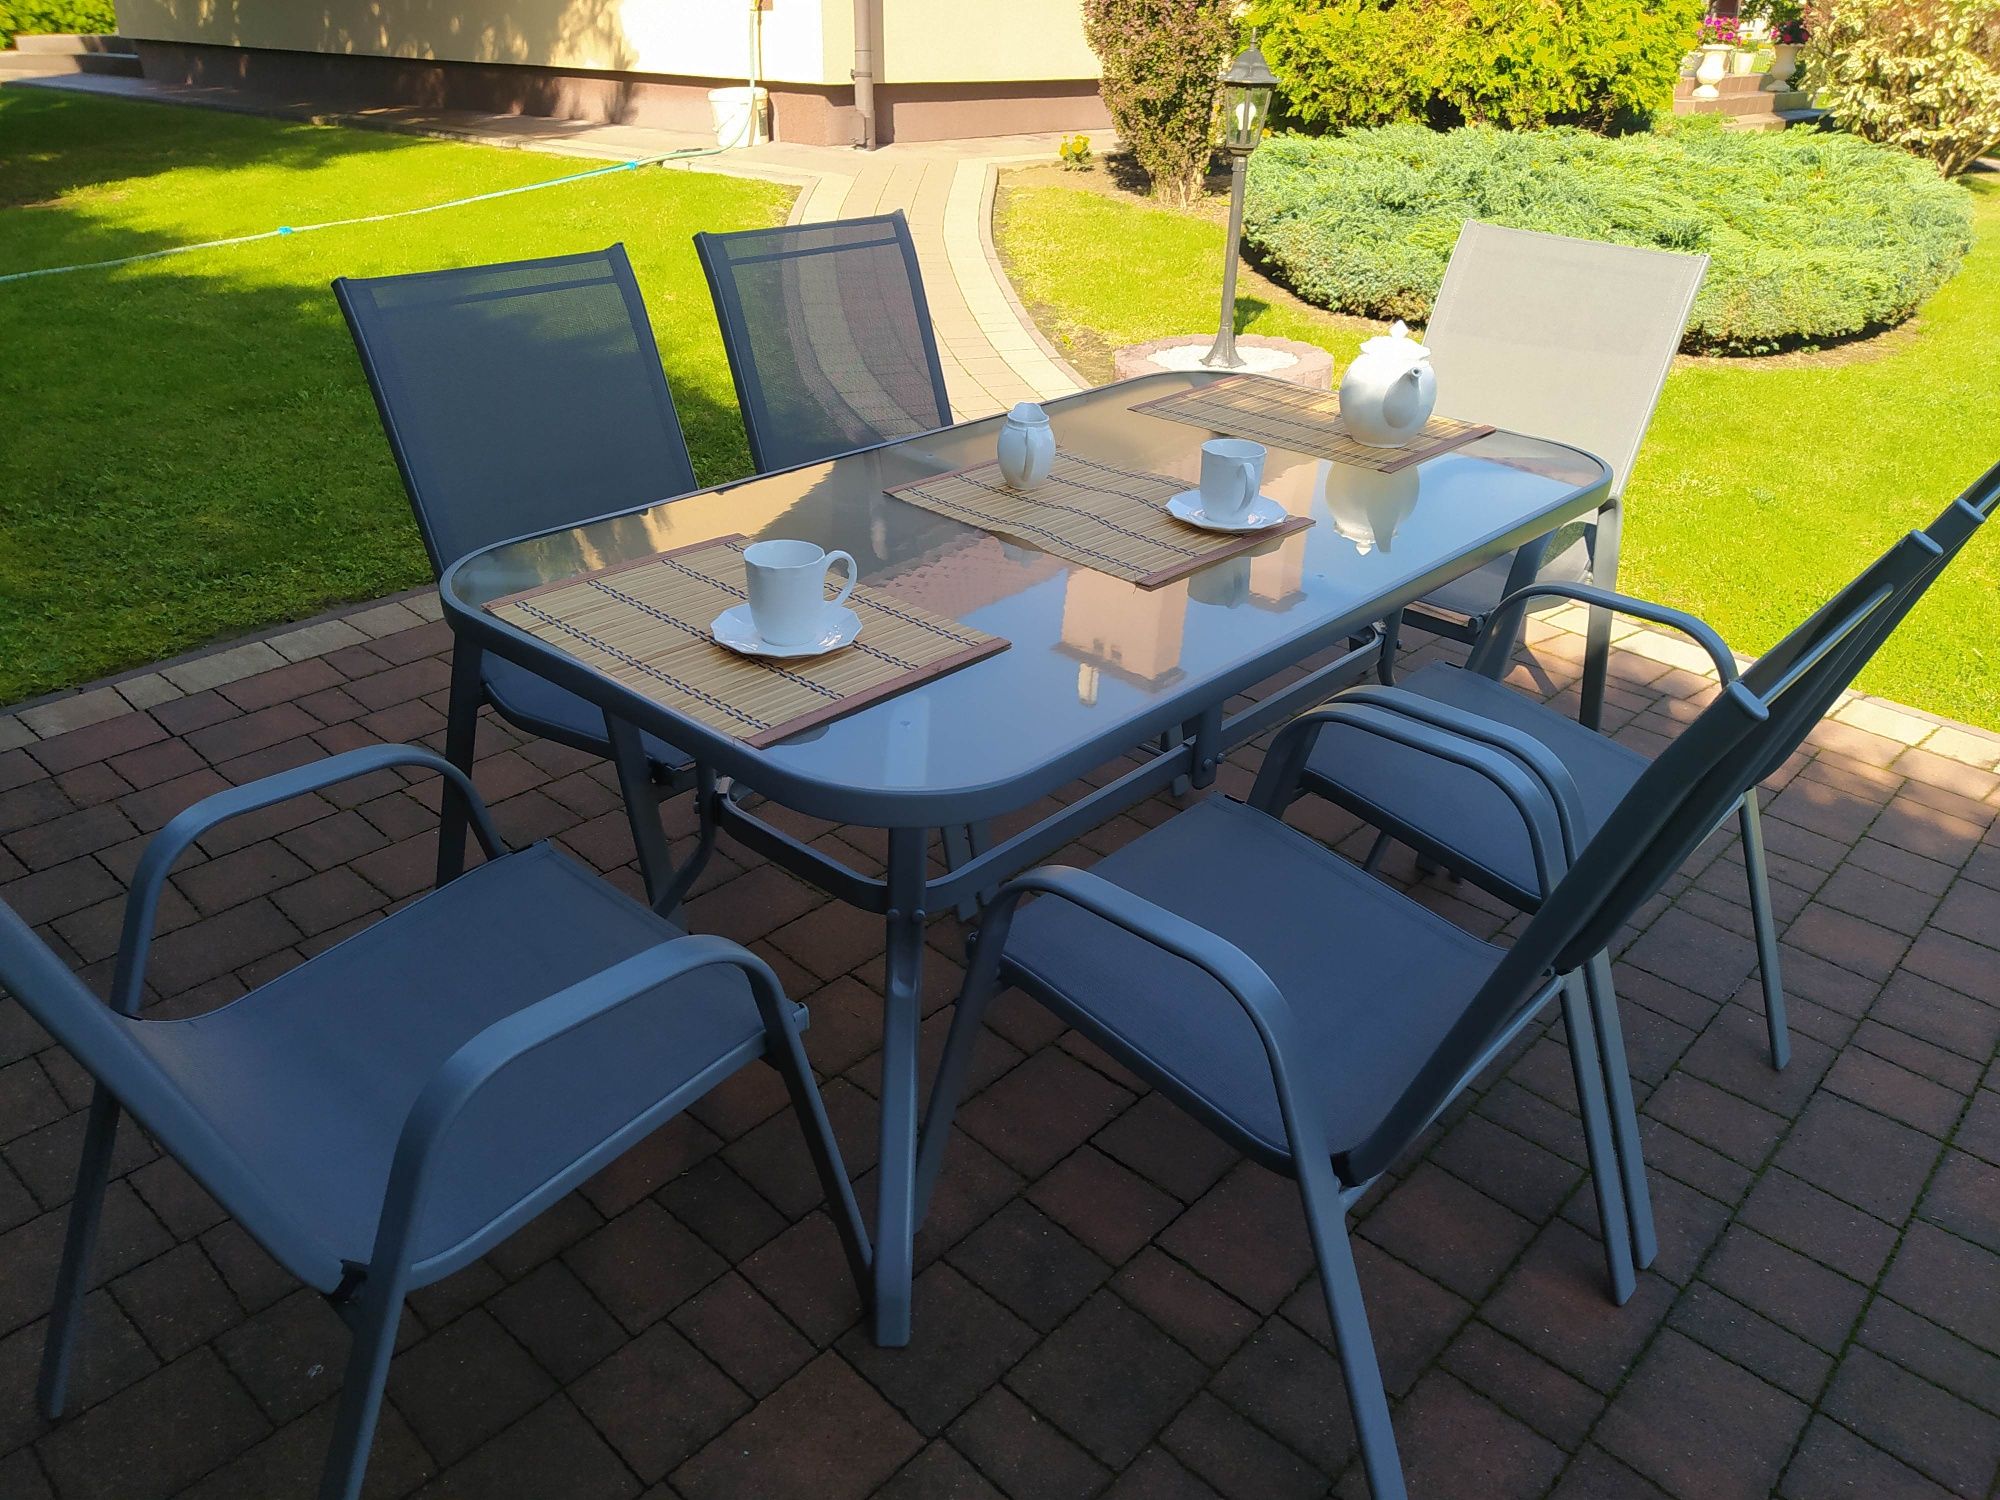 NOWE Zestaw mebli ogrodowych : Duży stół i 6 krzeseł